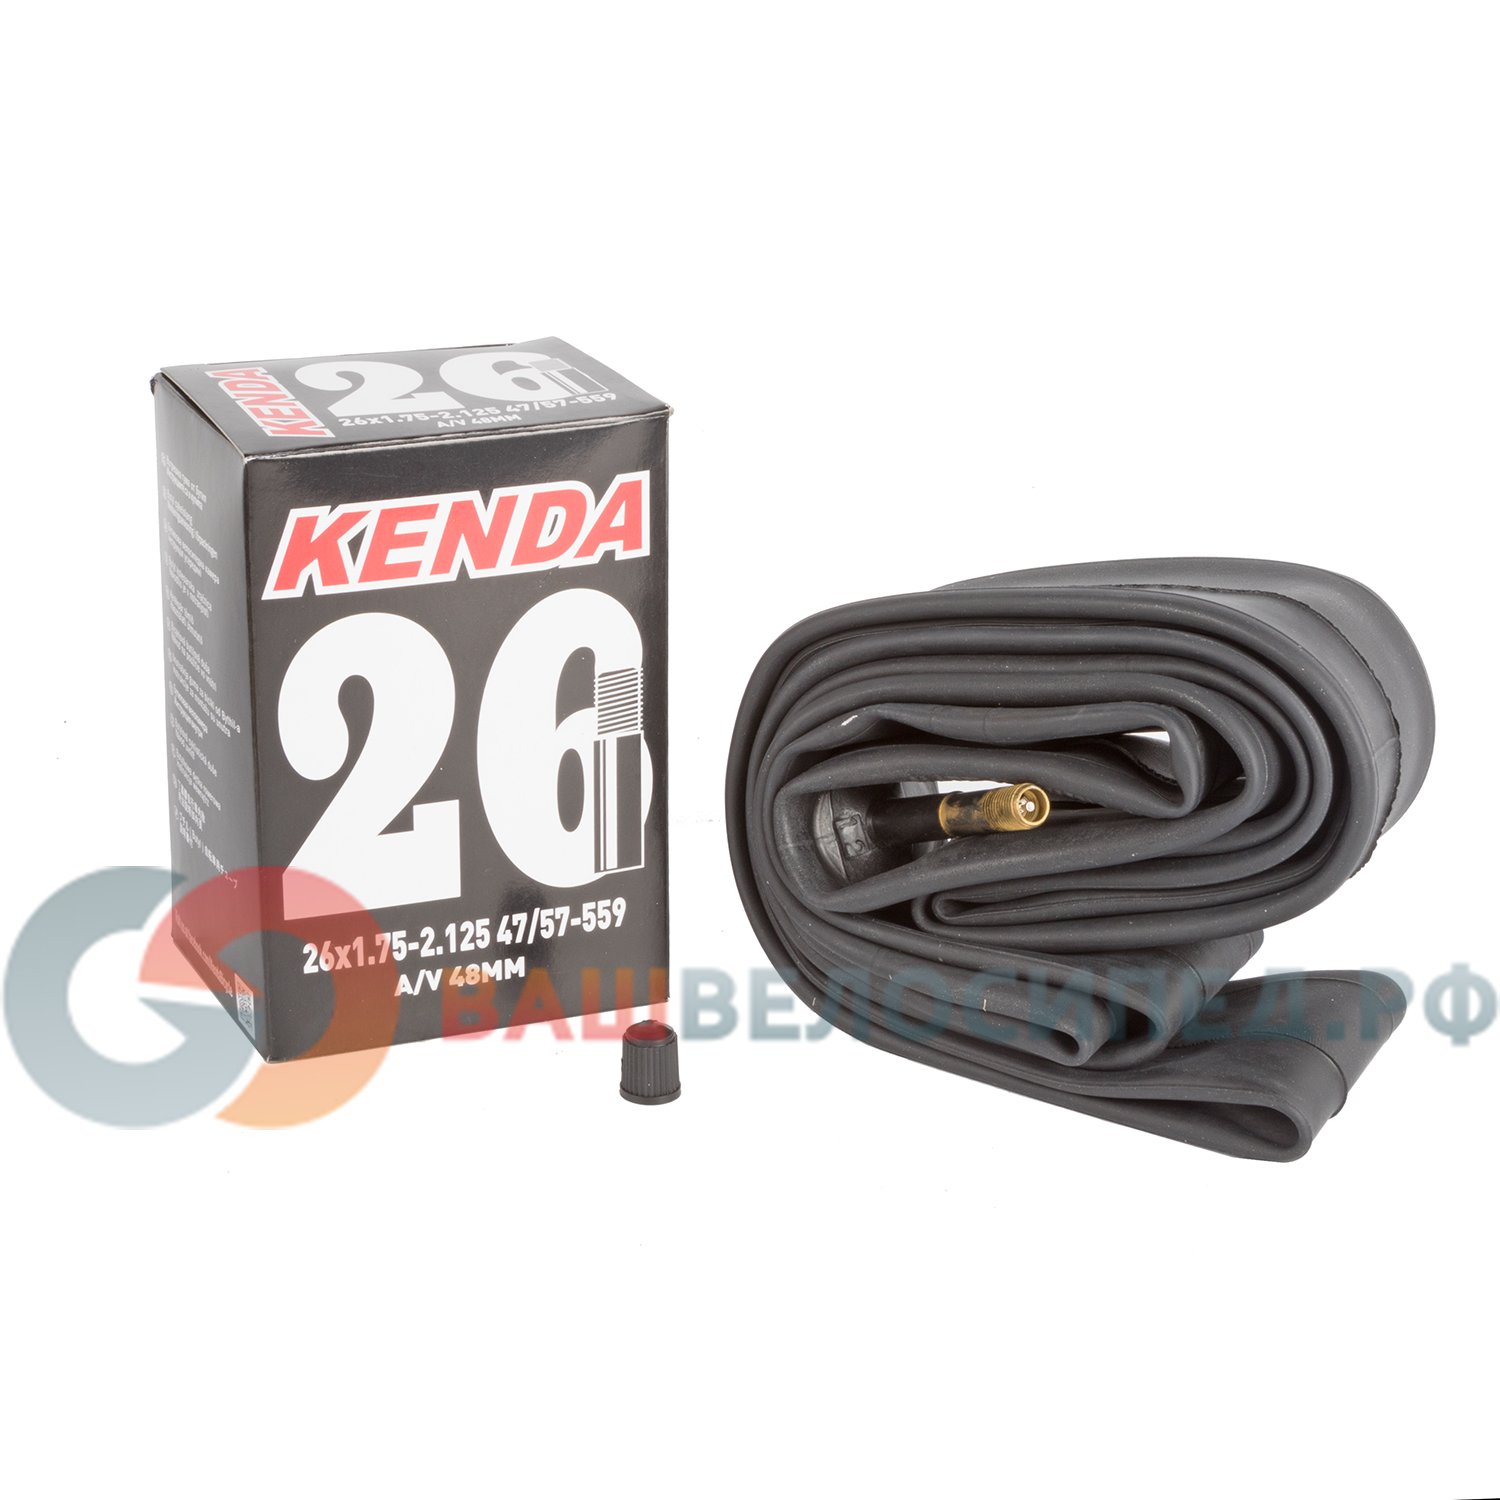 Камера велосипедная KENDA 26"х1.75-2.125 (47/57-559), автониппель, 48 мм, 5-514123 купить на ЖДБЗ.ру - фотография № 2